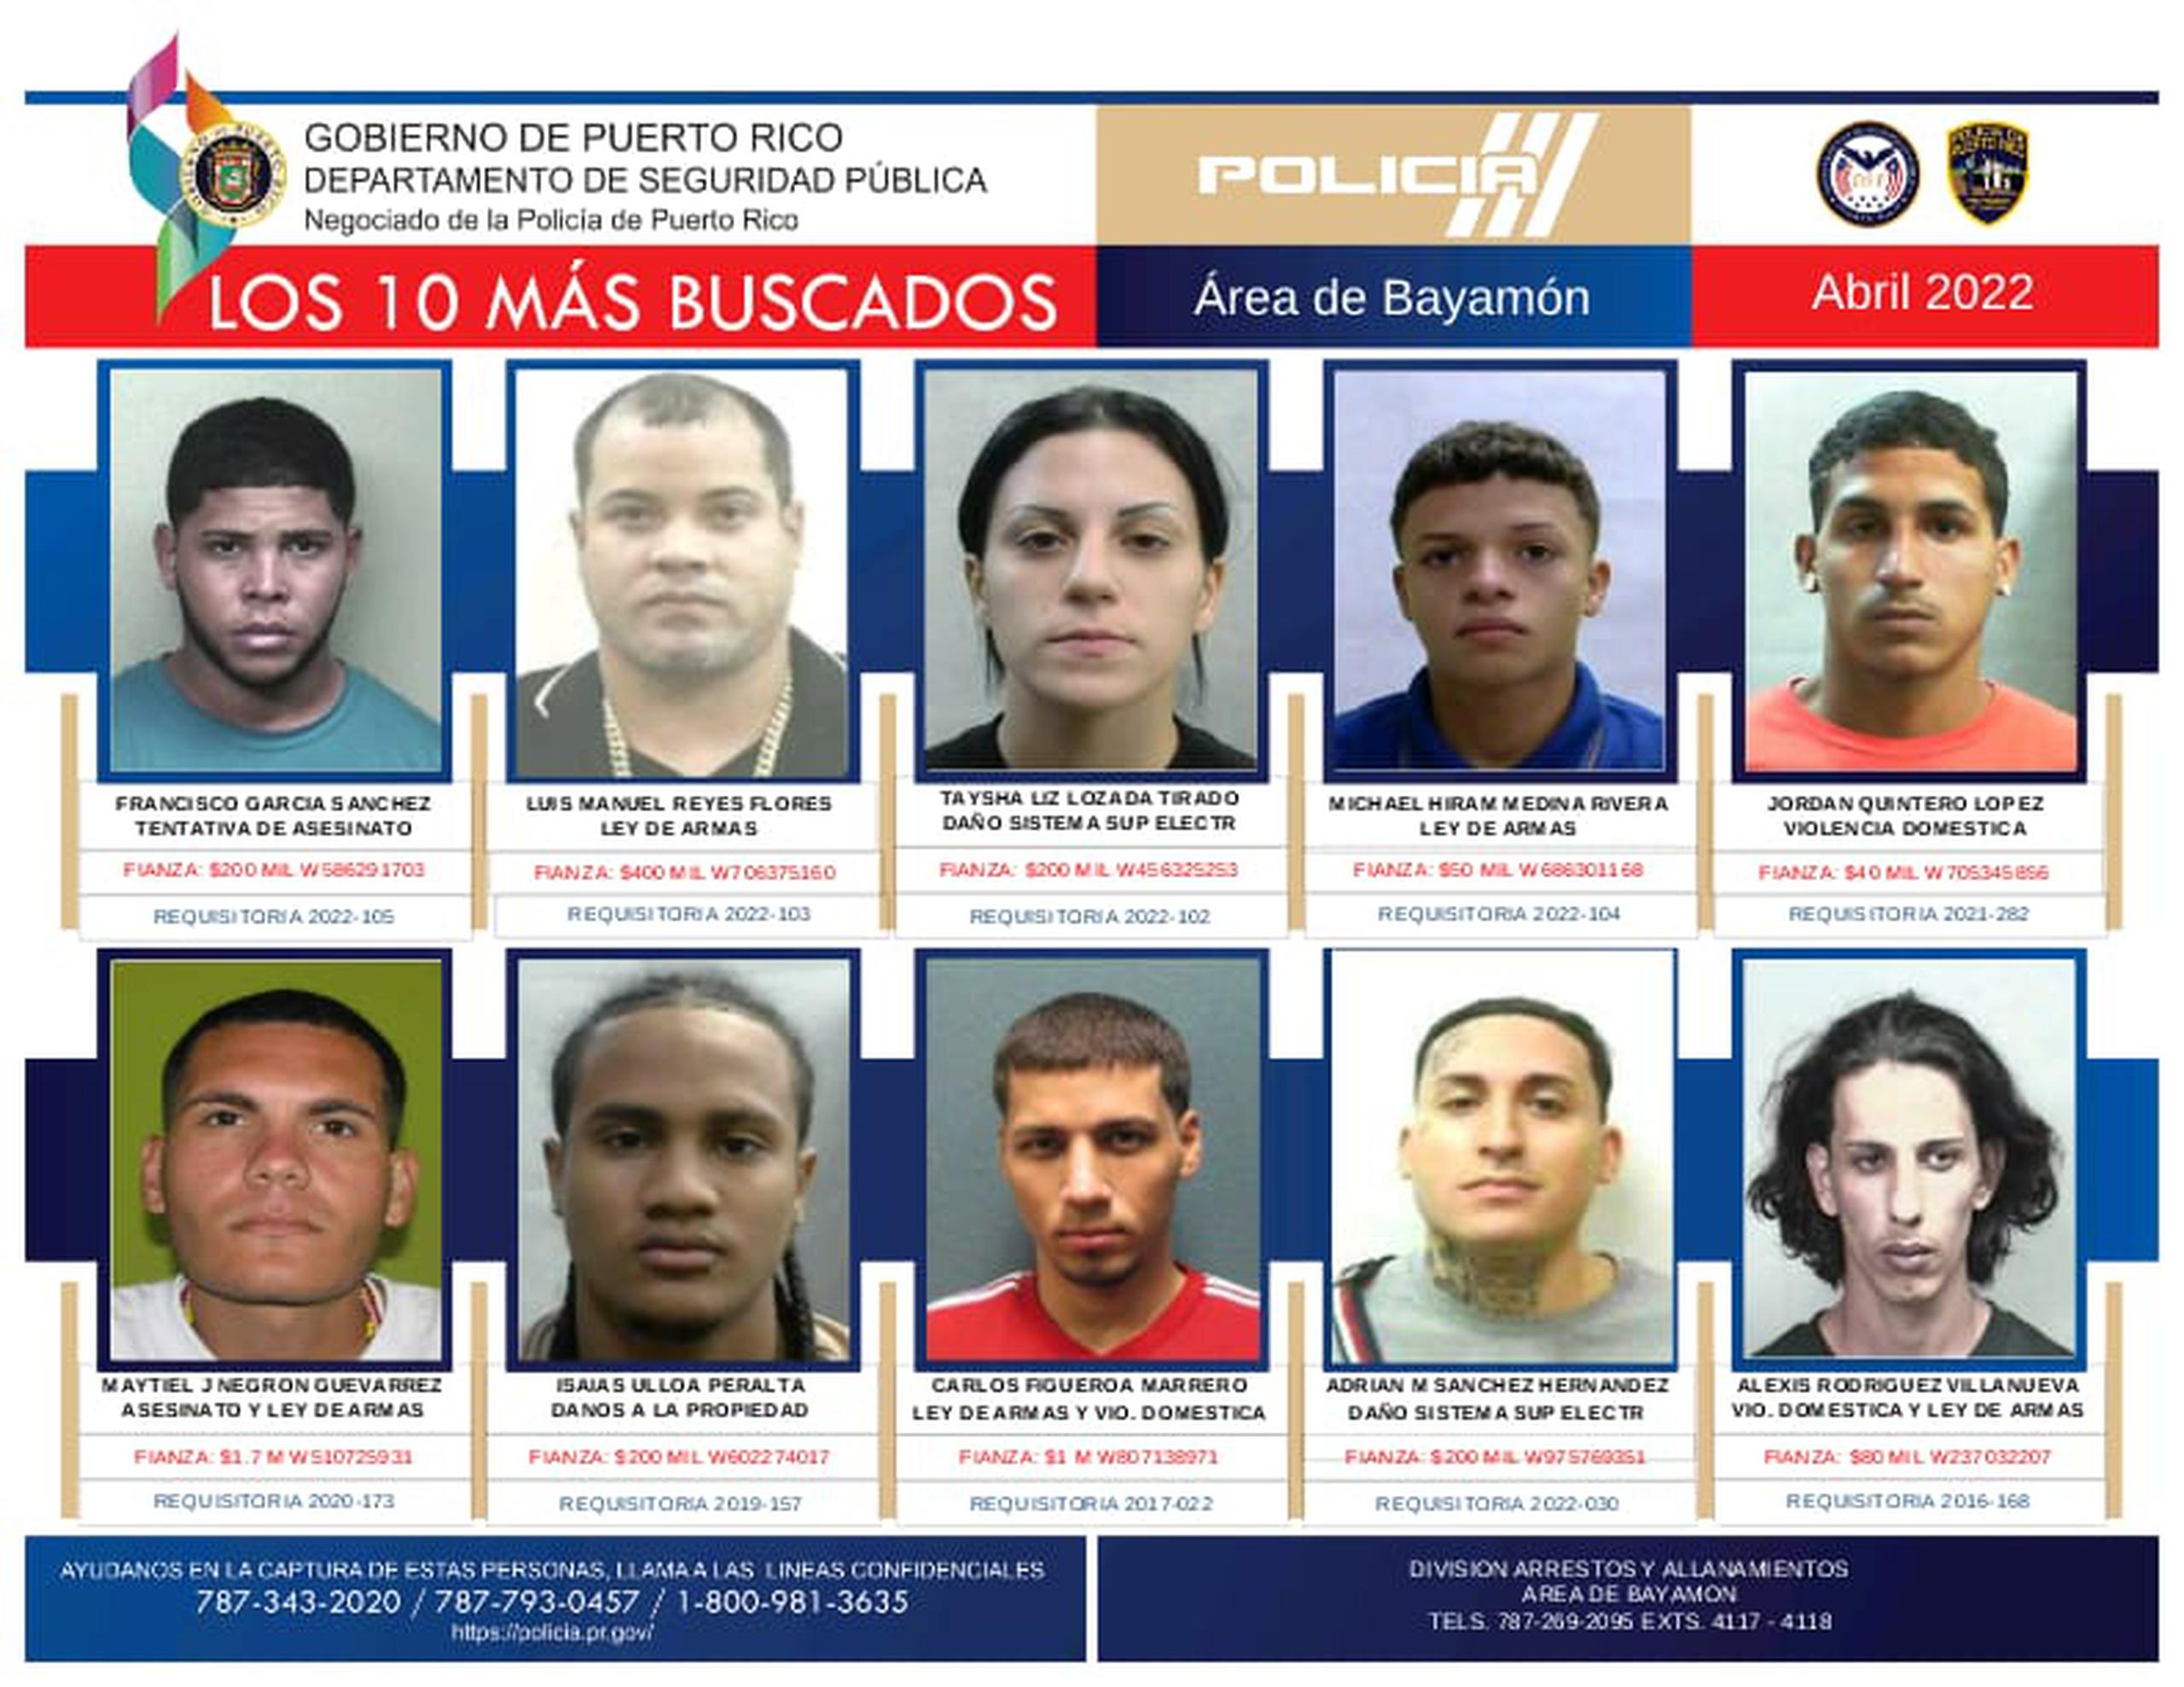 El Negociado de la Policía actualizó la lista de los fugitivos más buscados en el área de Bayamón. Si los ha visto llame a la línea confidencial (787) 343-2020.